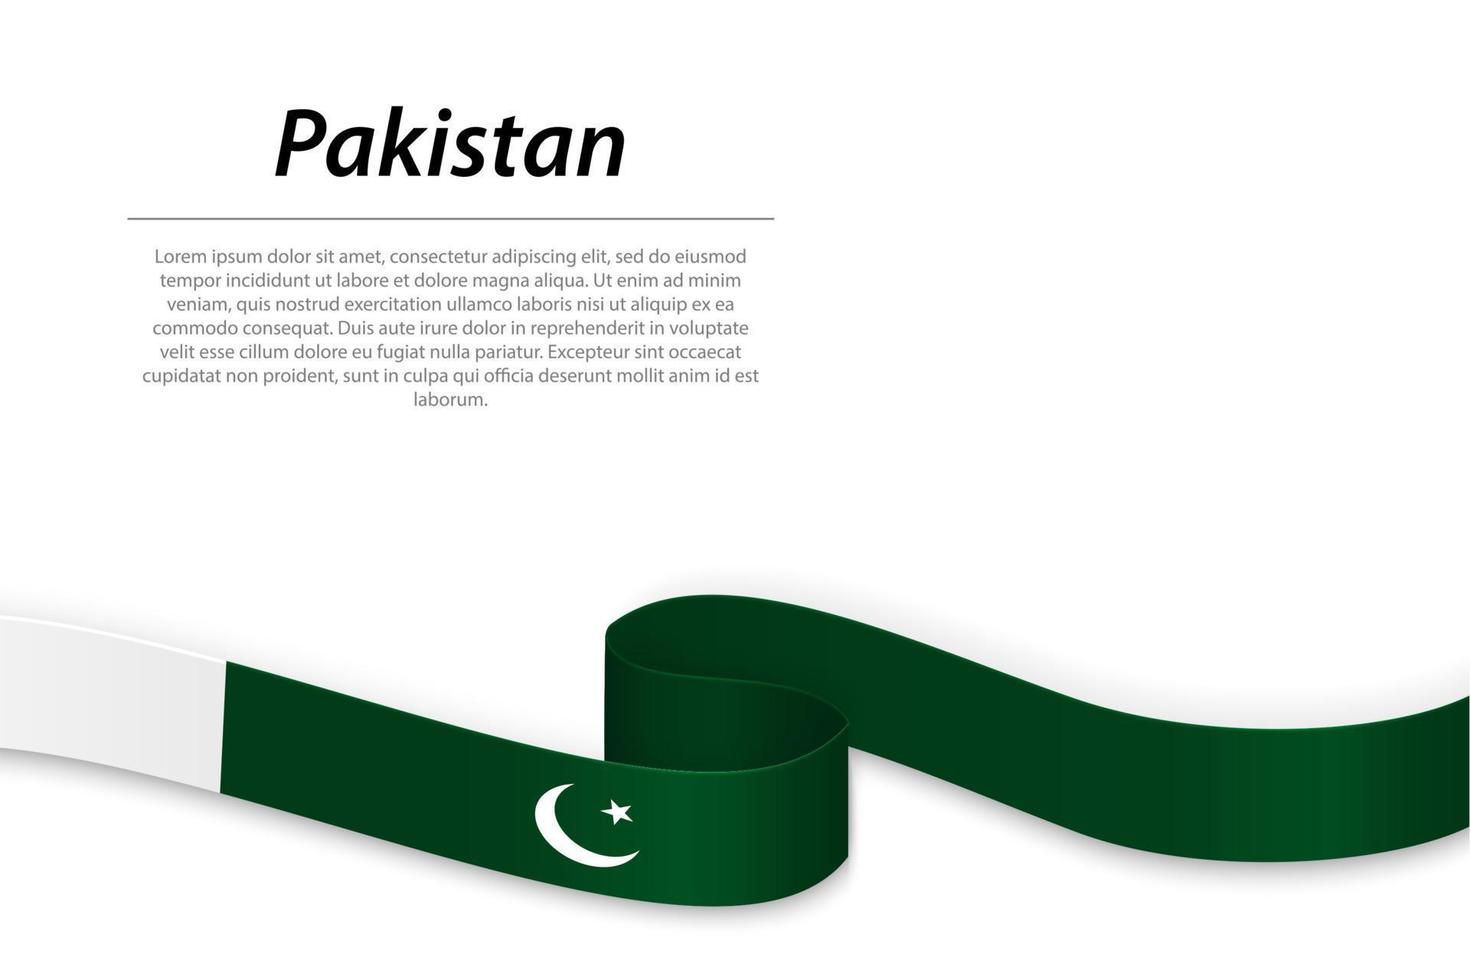 acenando a fita ou banner com bandeira do Paquistão vetor